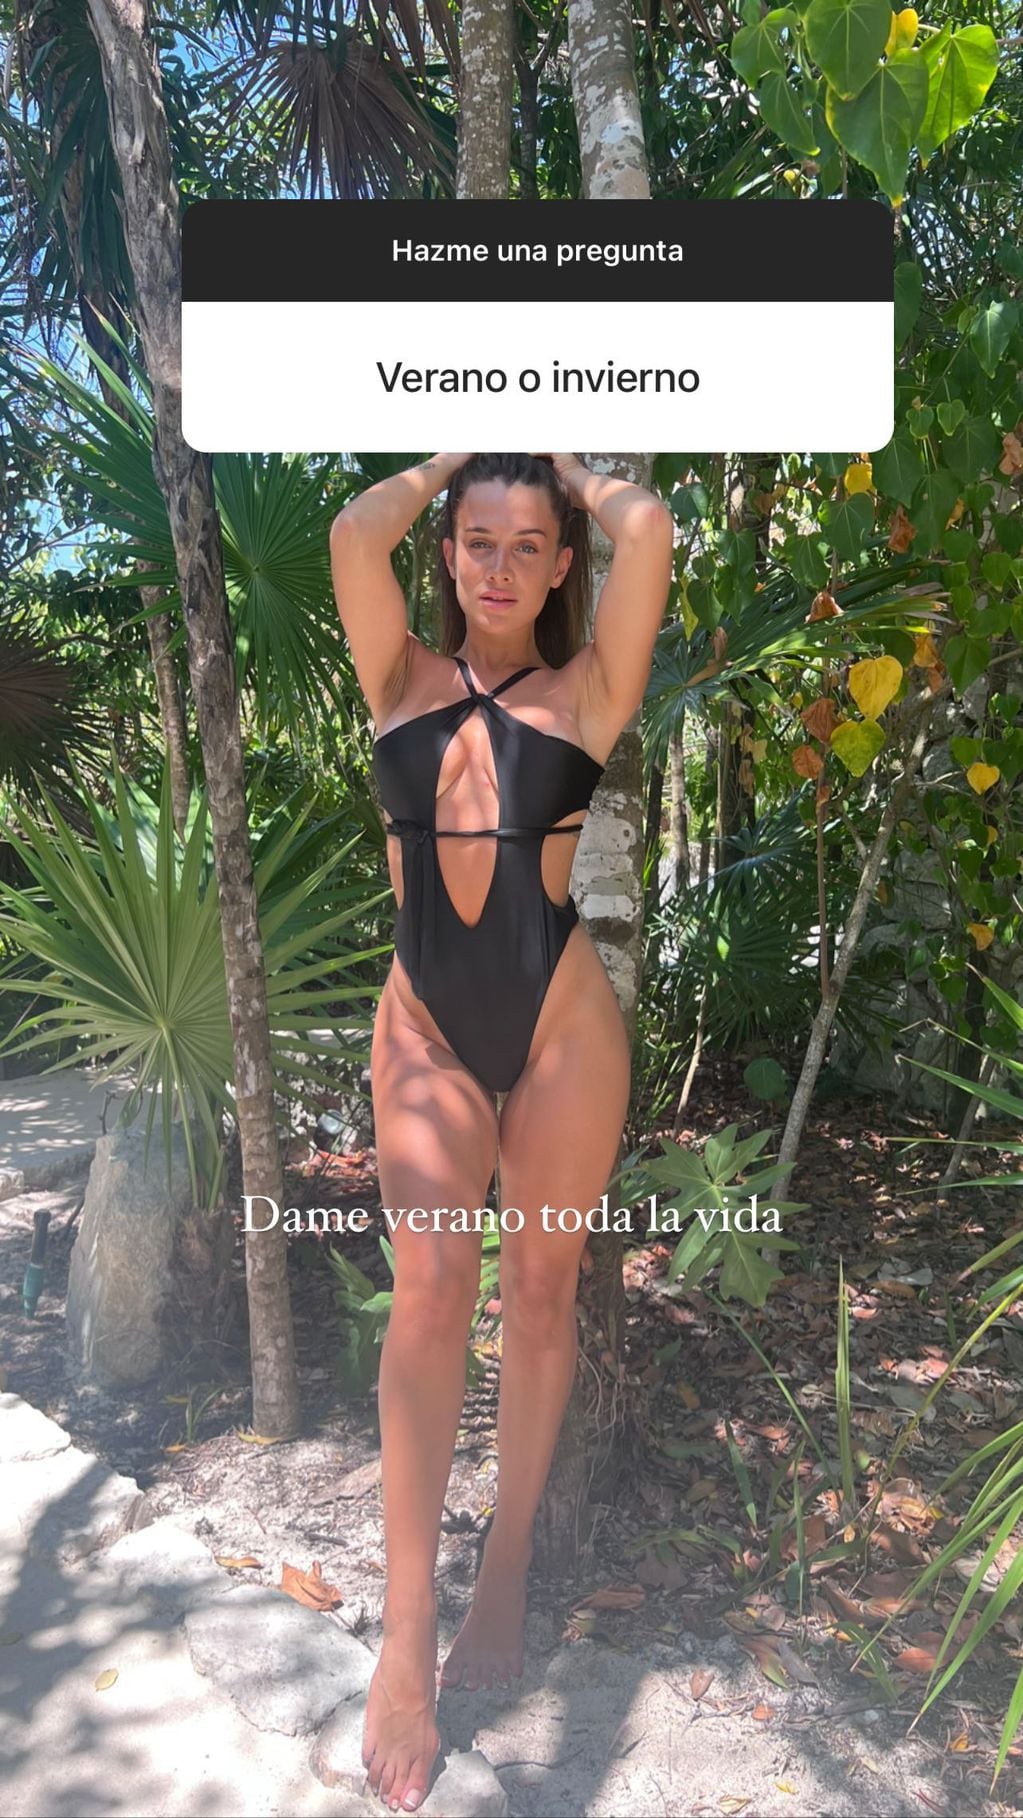 Camila Homs se declaró team verano con una foto en traje de baño